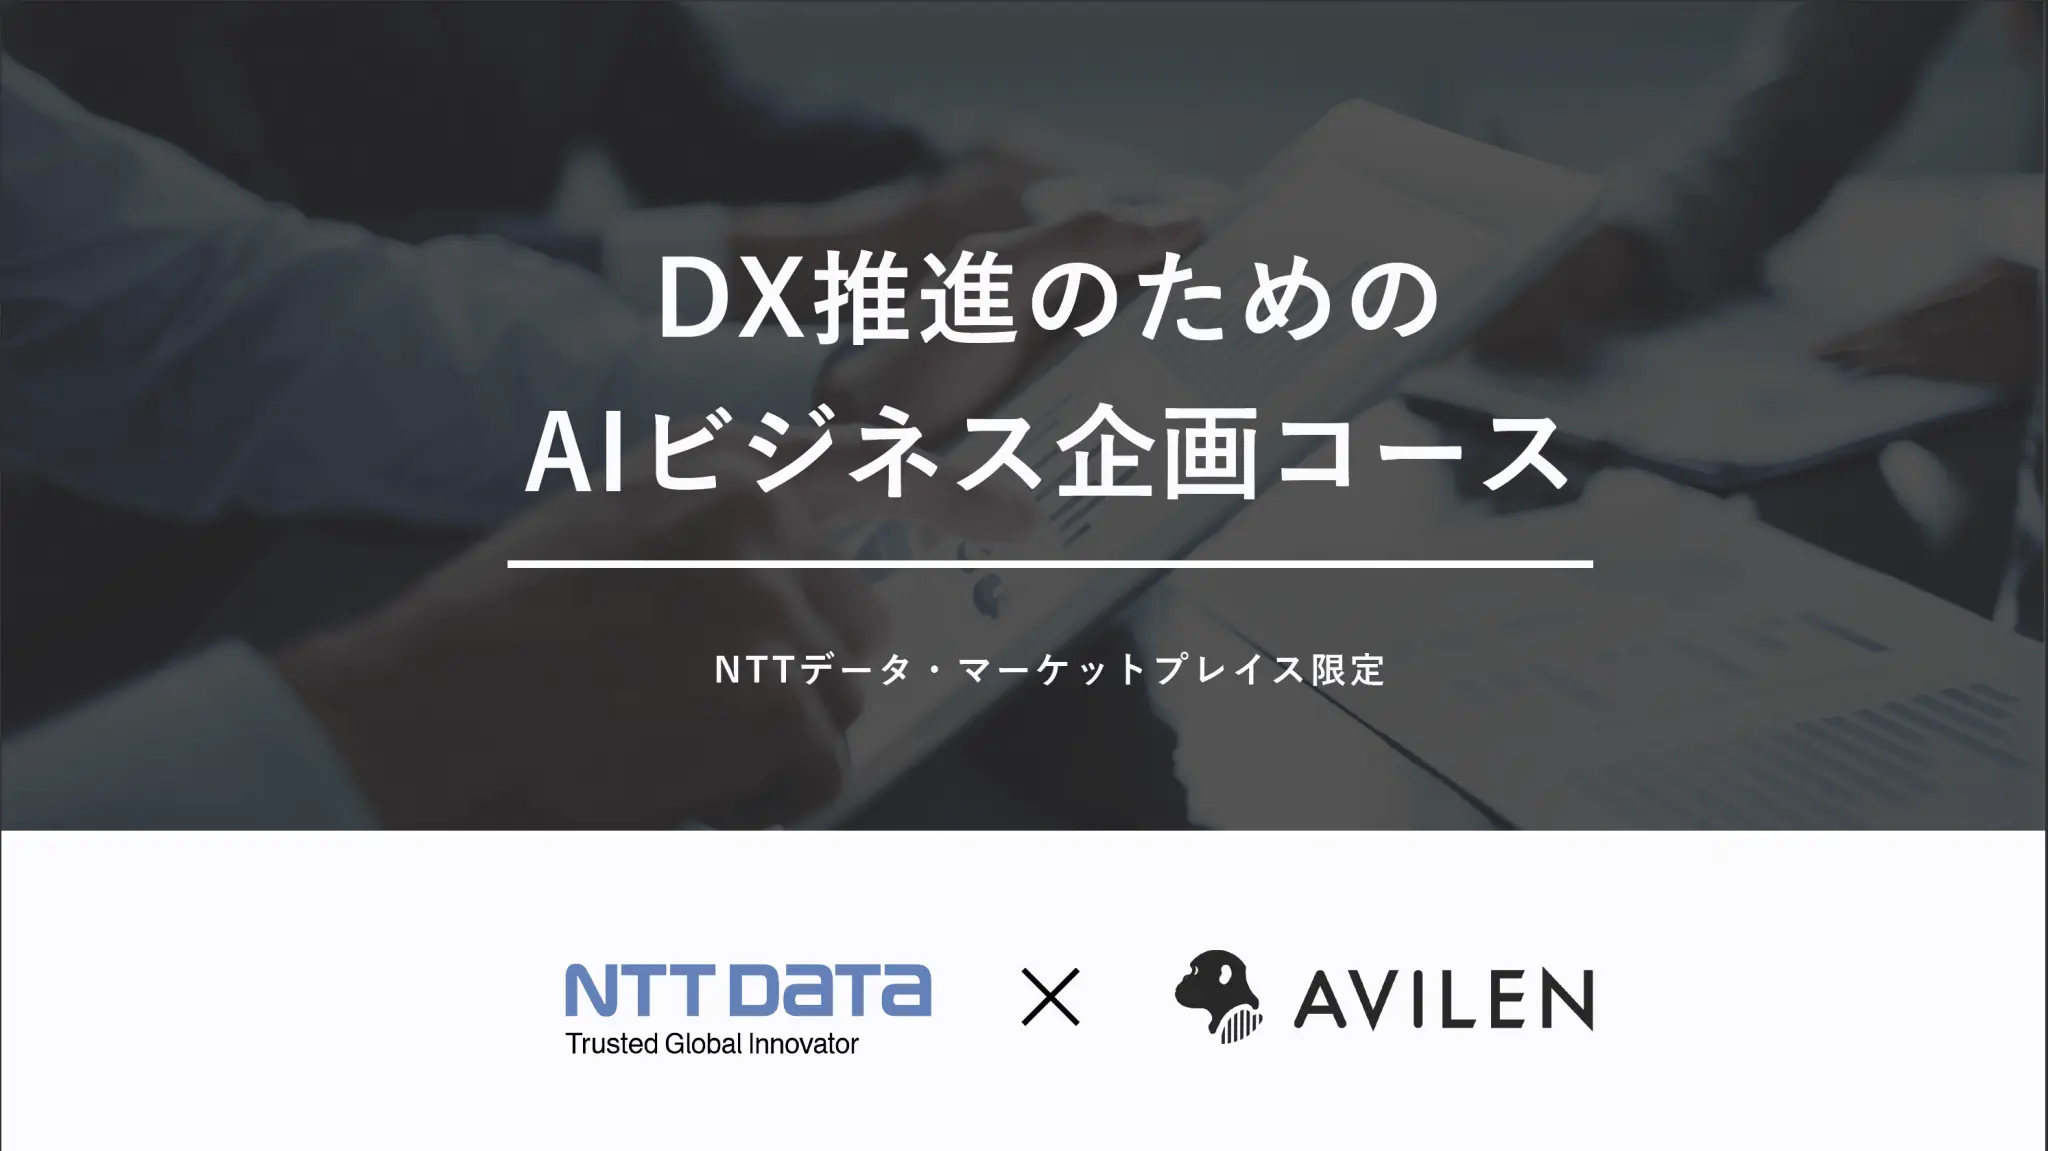 NTTデータとAVILENが「DXマーケットプレイスパートナー契約」を締結！ – 「AIビジネス企画コース」を販売開始